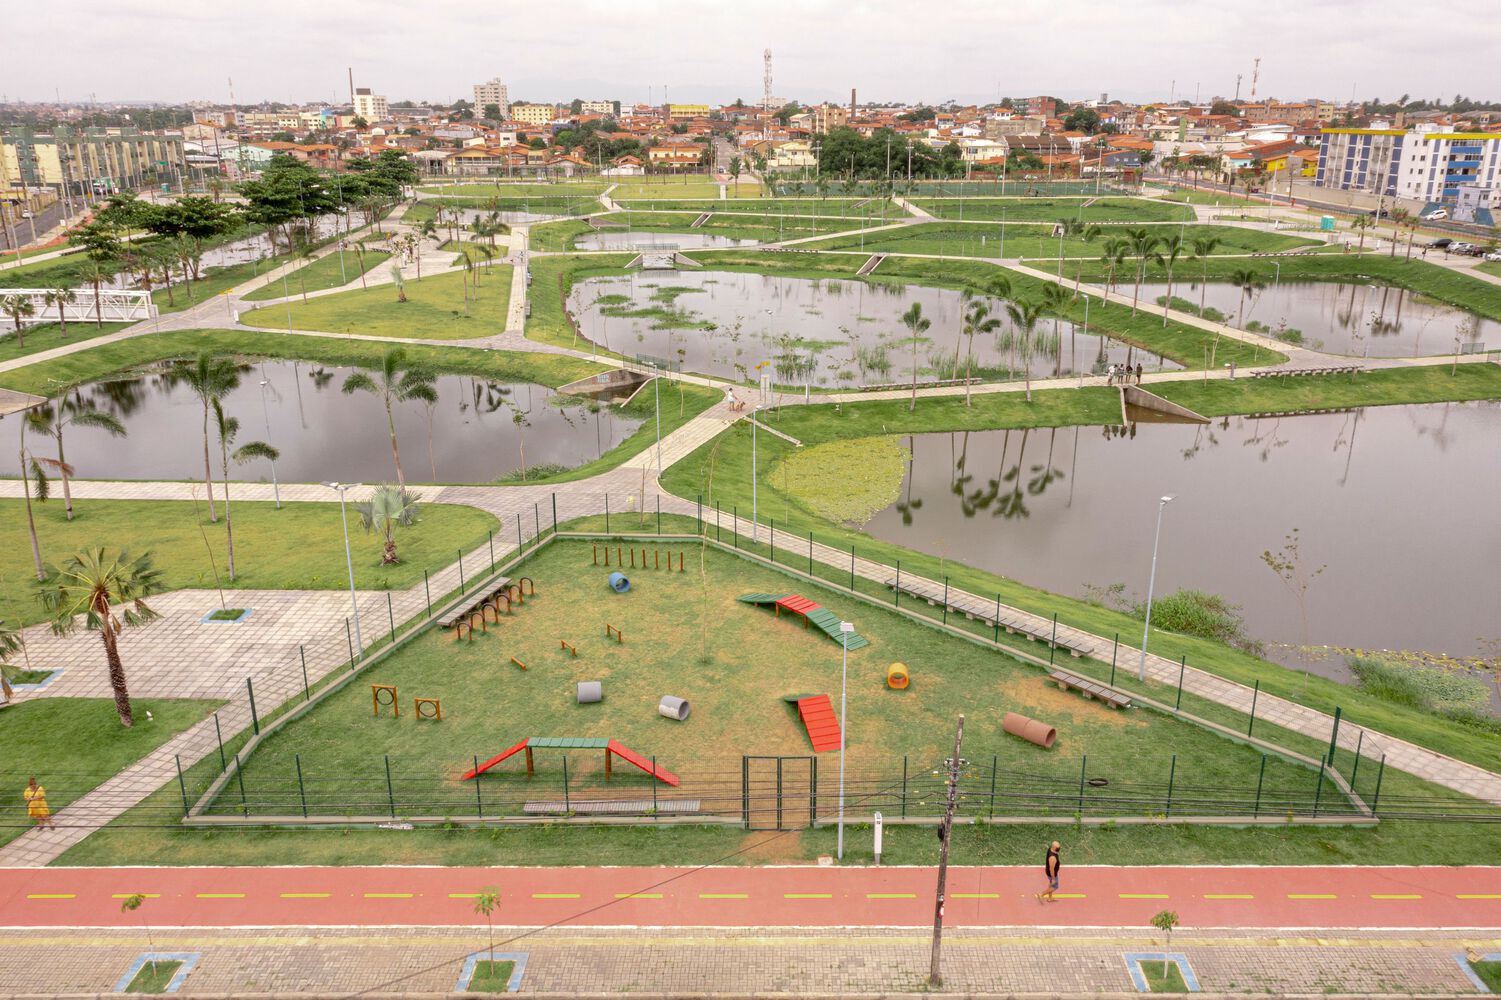 پارک راشل دو کی روش برزیل طراحی شده توسط شرکت معماری  Architectus S/S